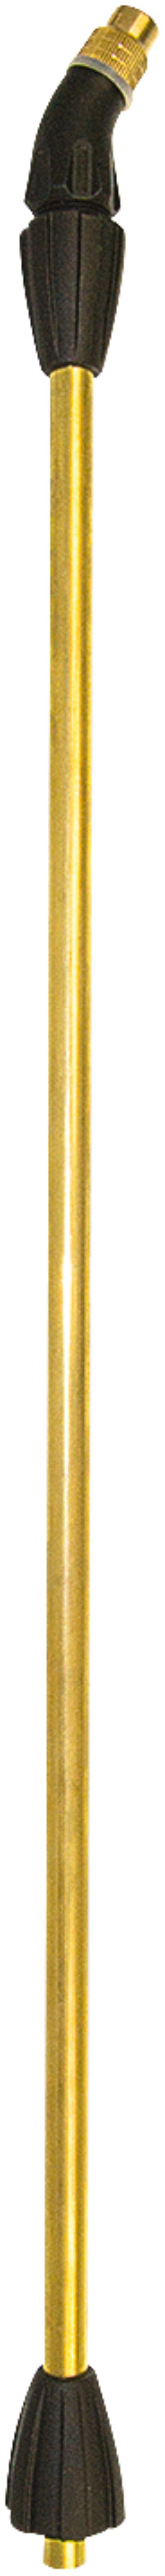 MESTO Spritzrohr, 50 cm mit Düse 1,1 mm